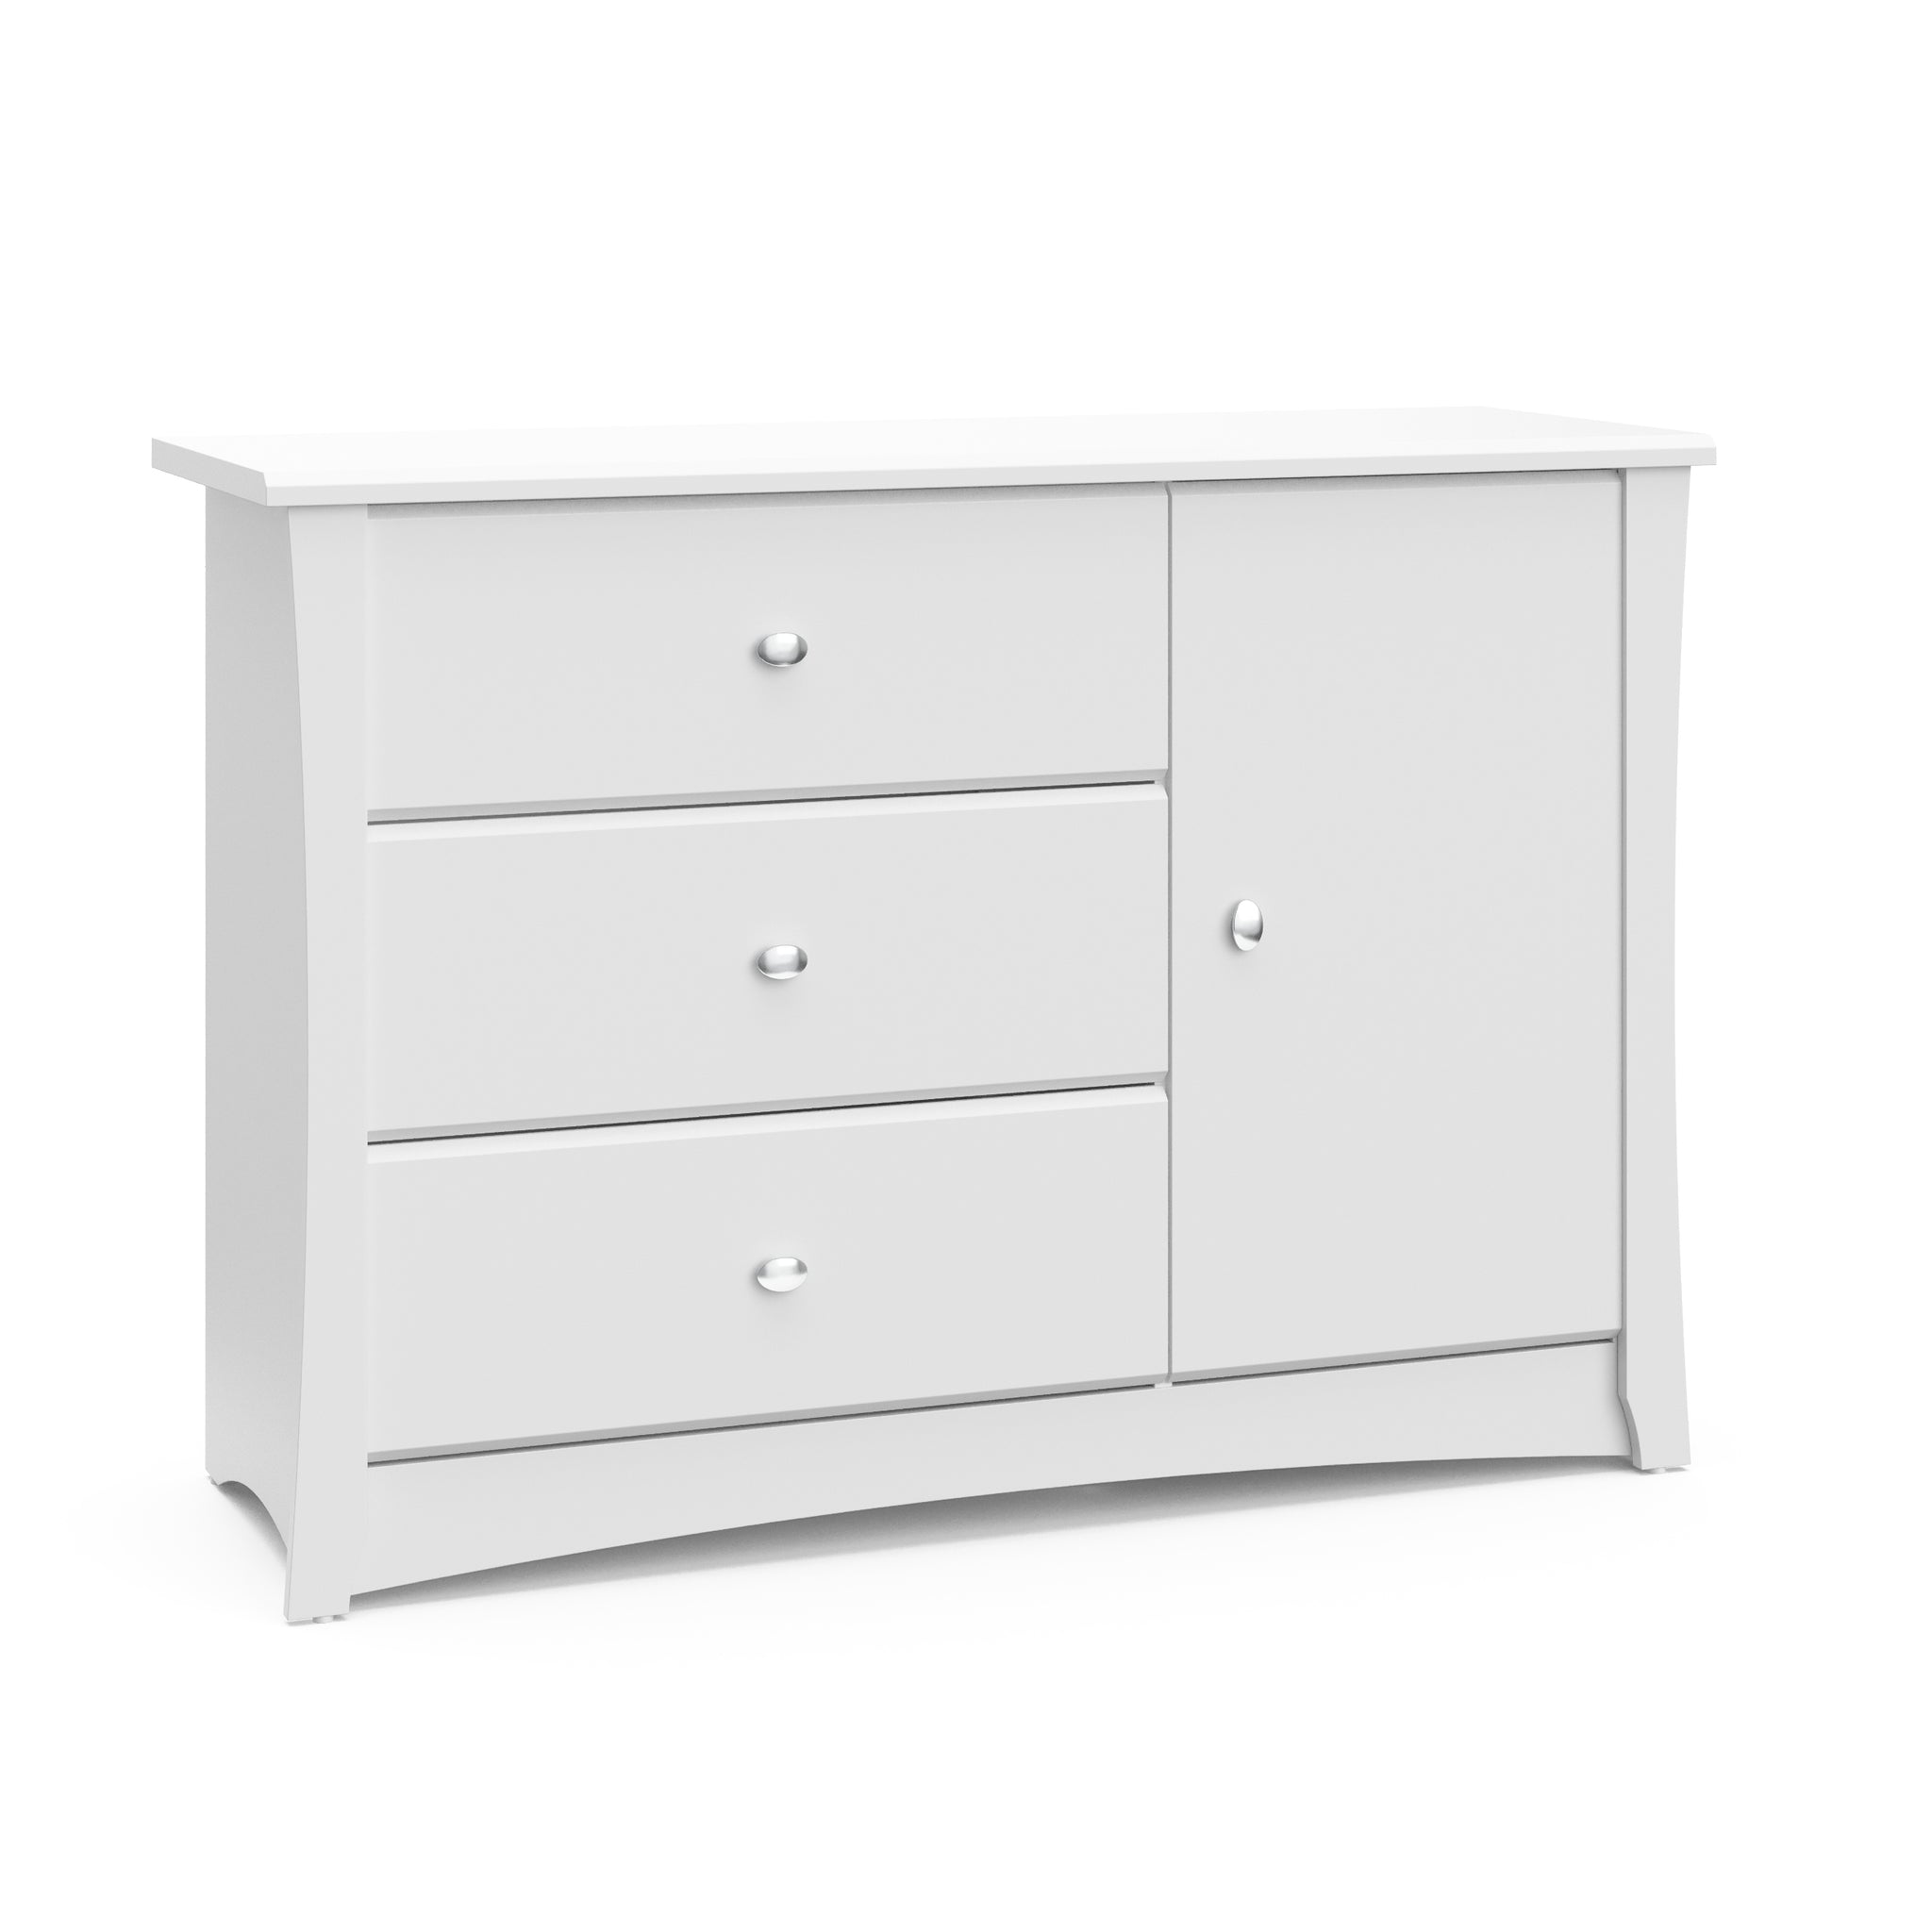 White 3 drawer chest angled